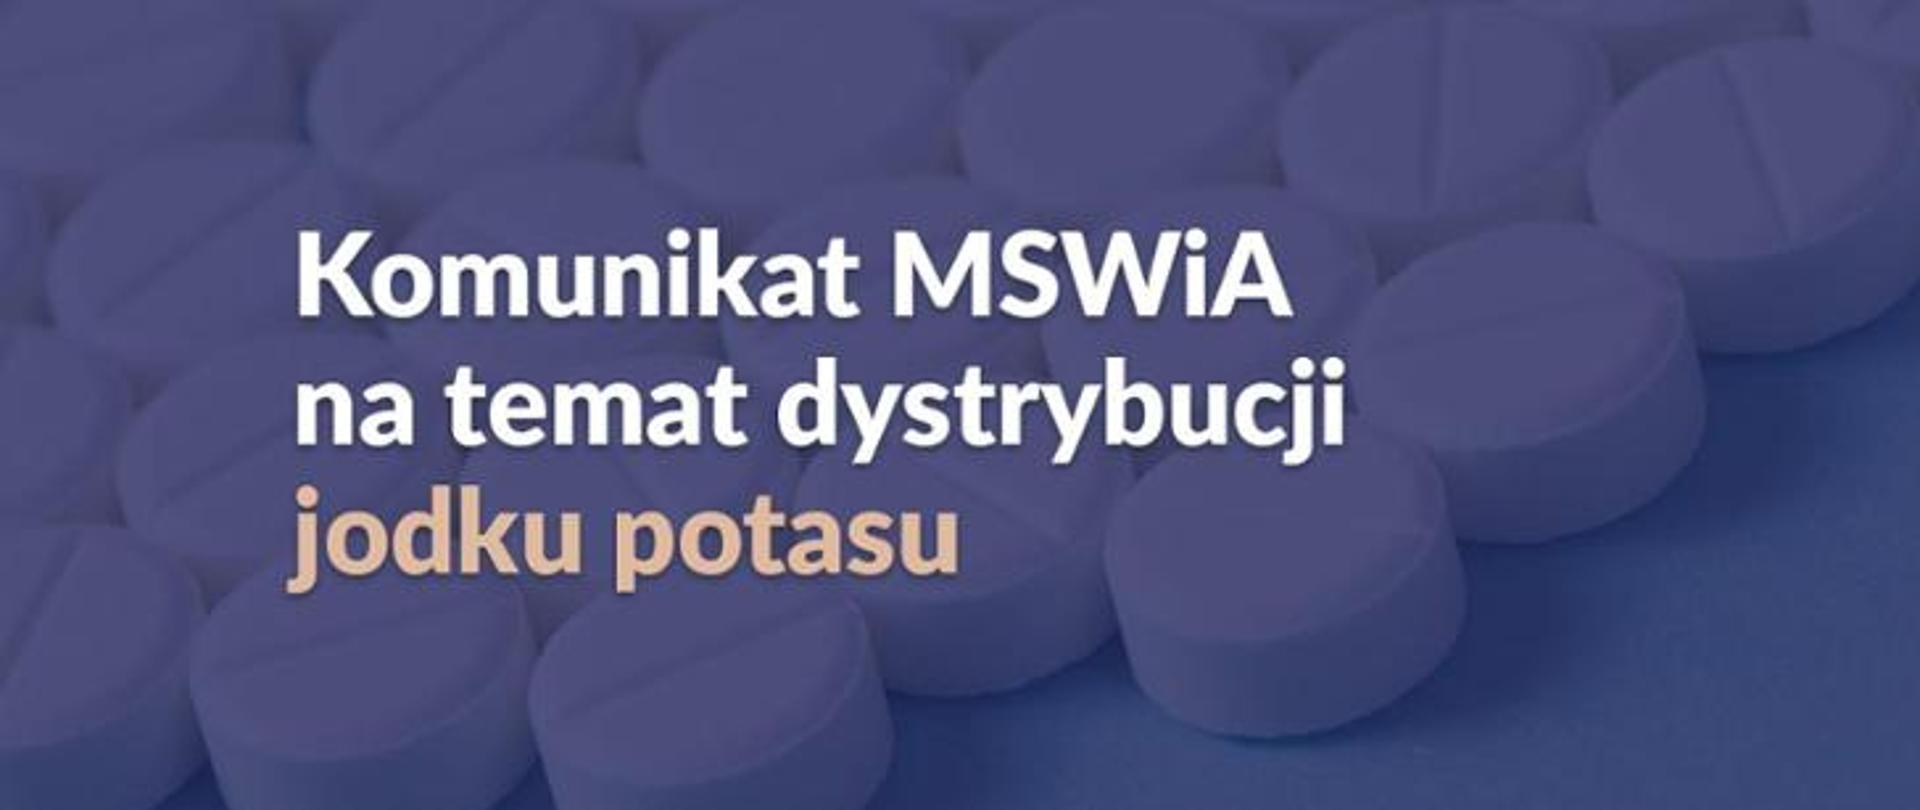 Napis "Komunikat MSWiA na temat dystrybucji jodku potasu" na tle fioletowych tabletek